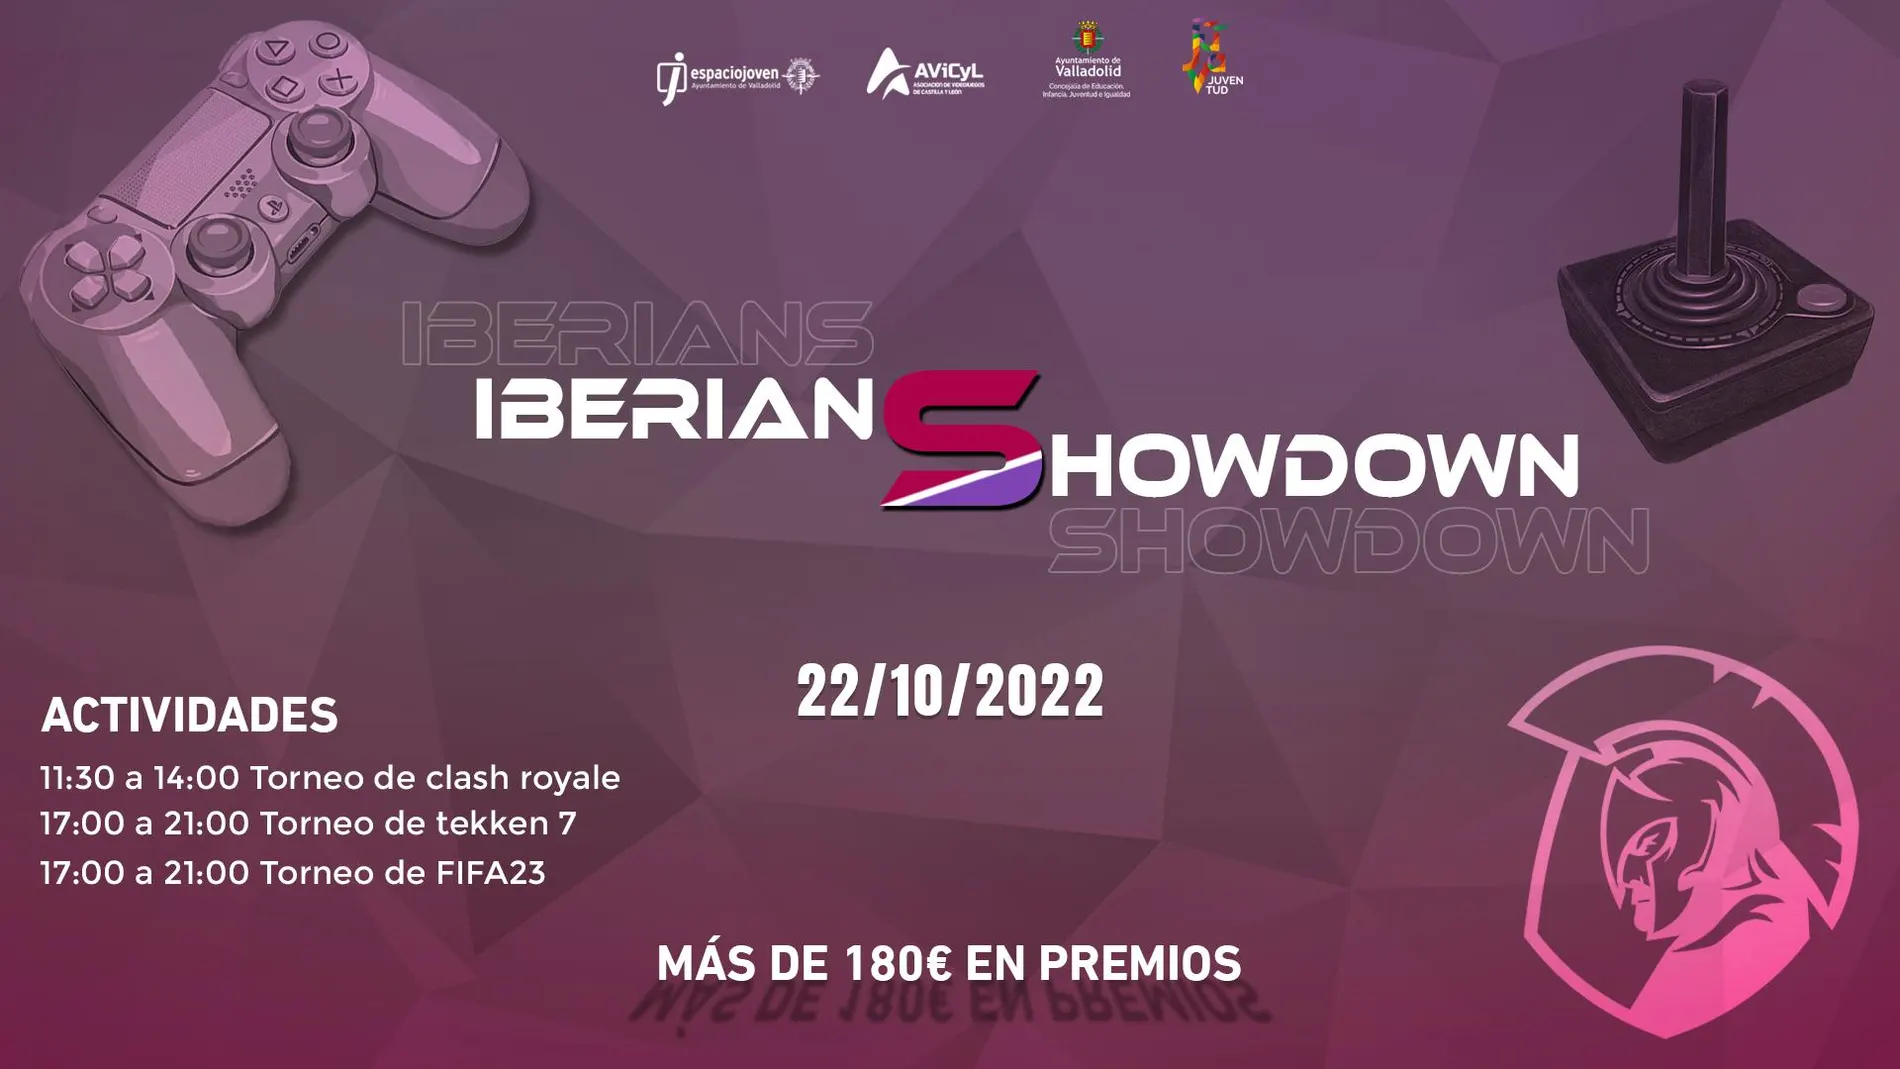 Iberians Showdown se celebrará el 22 de octubre de 2022